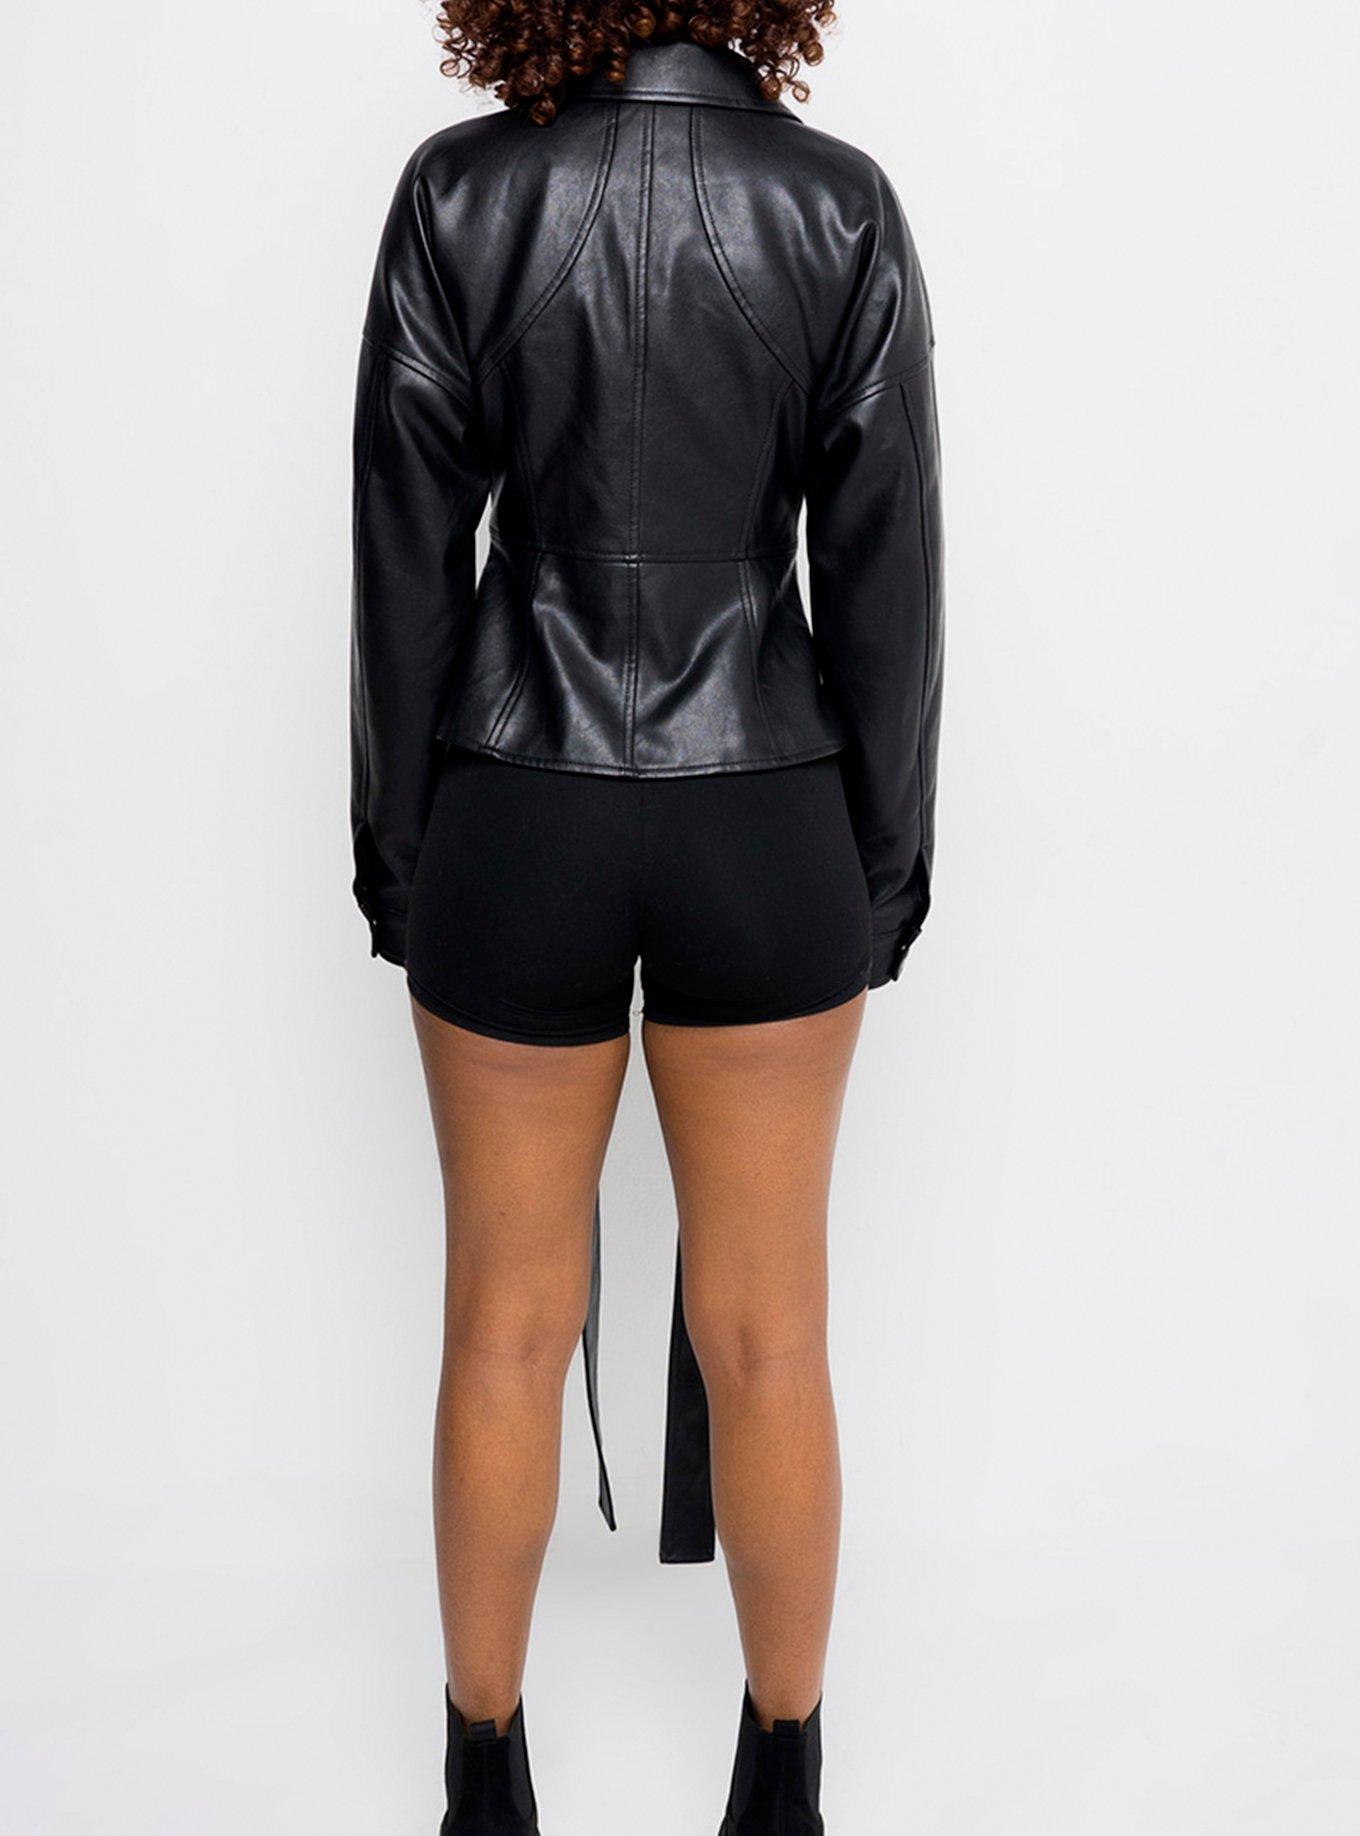 Azalea Wang Rule Breaker Faux Leather Jacket, BLACK, alternate